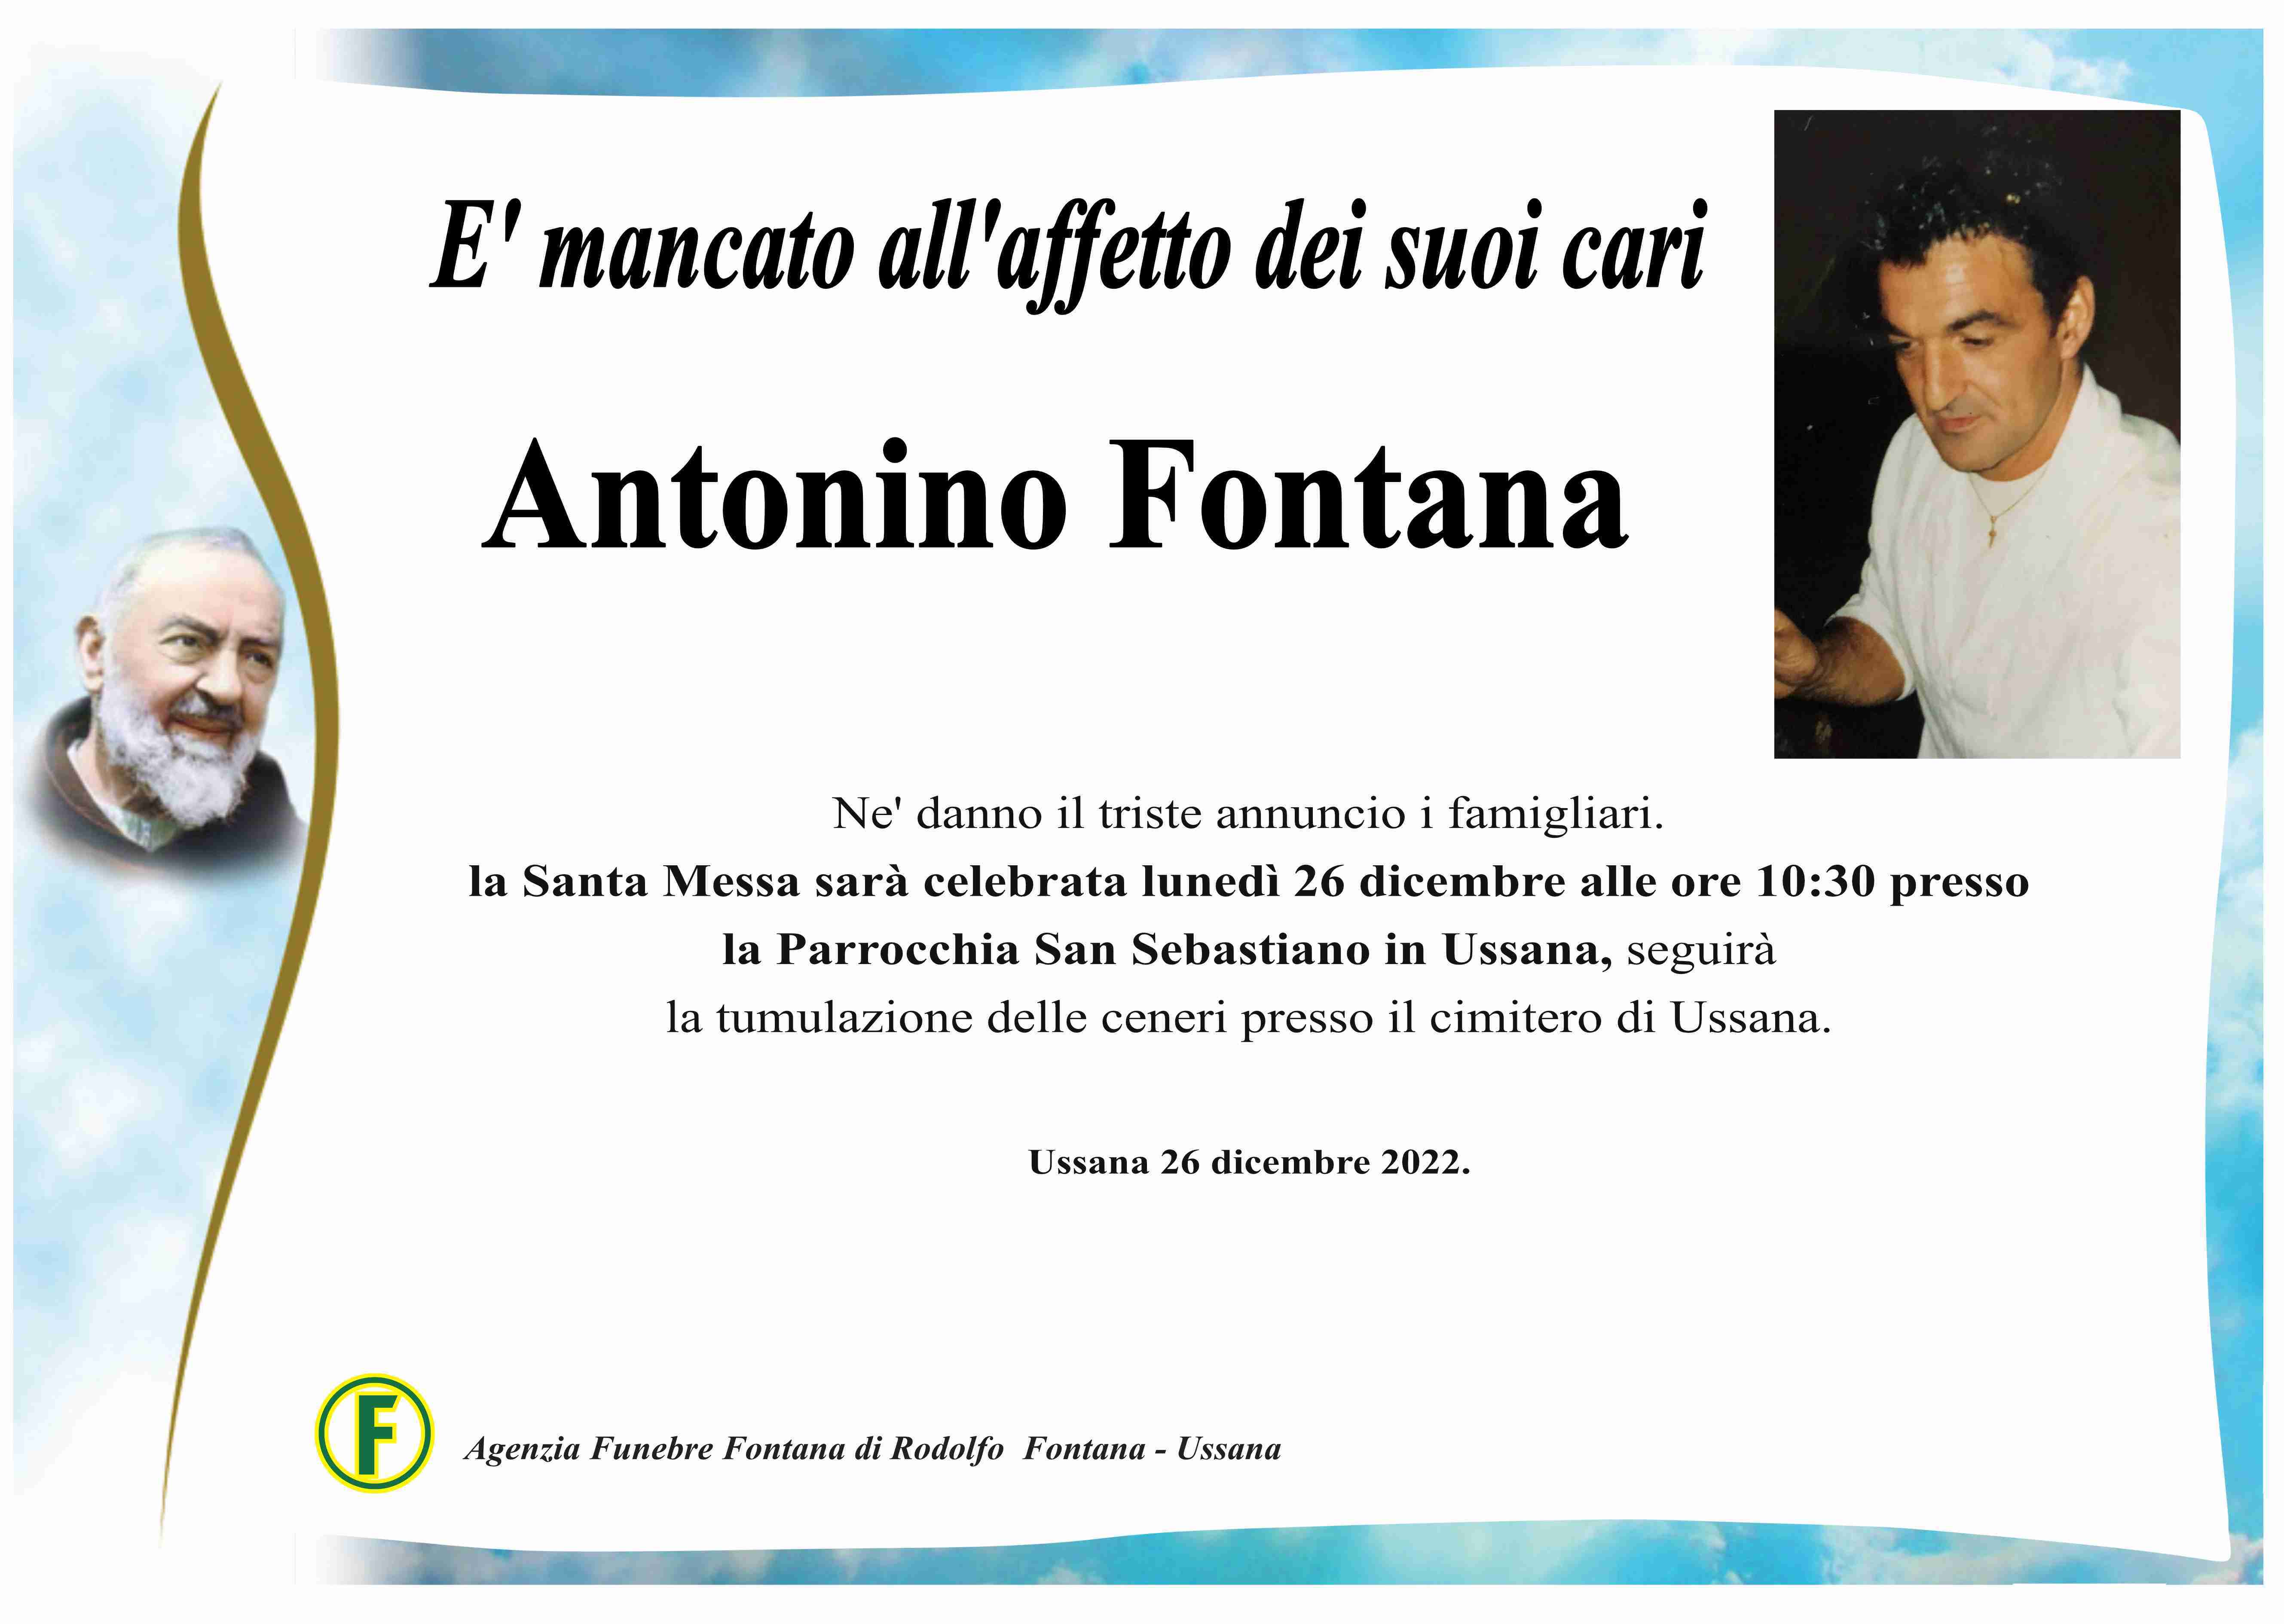 Antonino Fontana